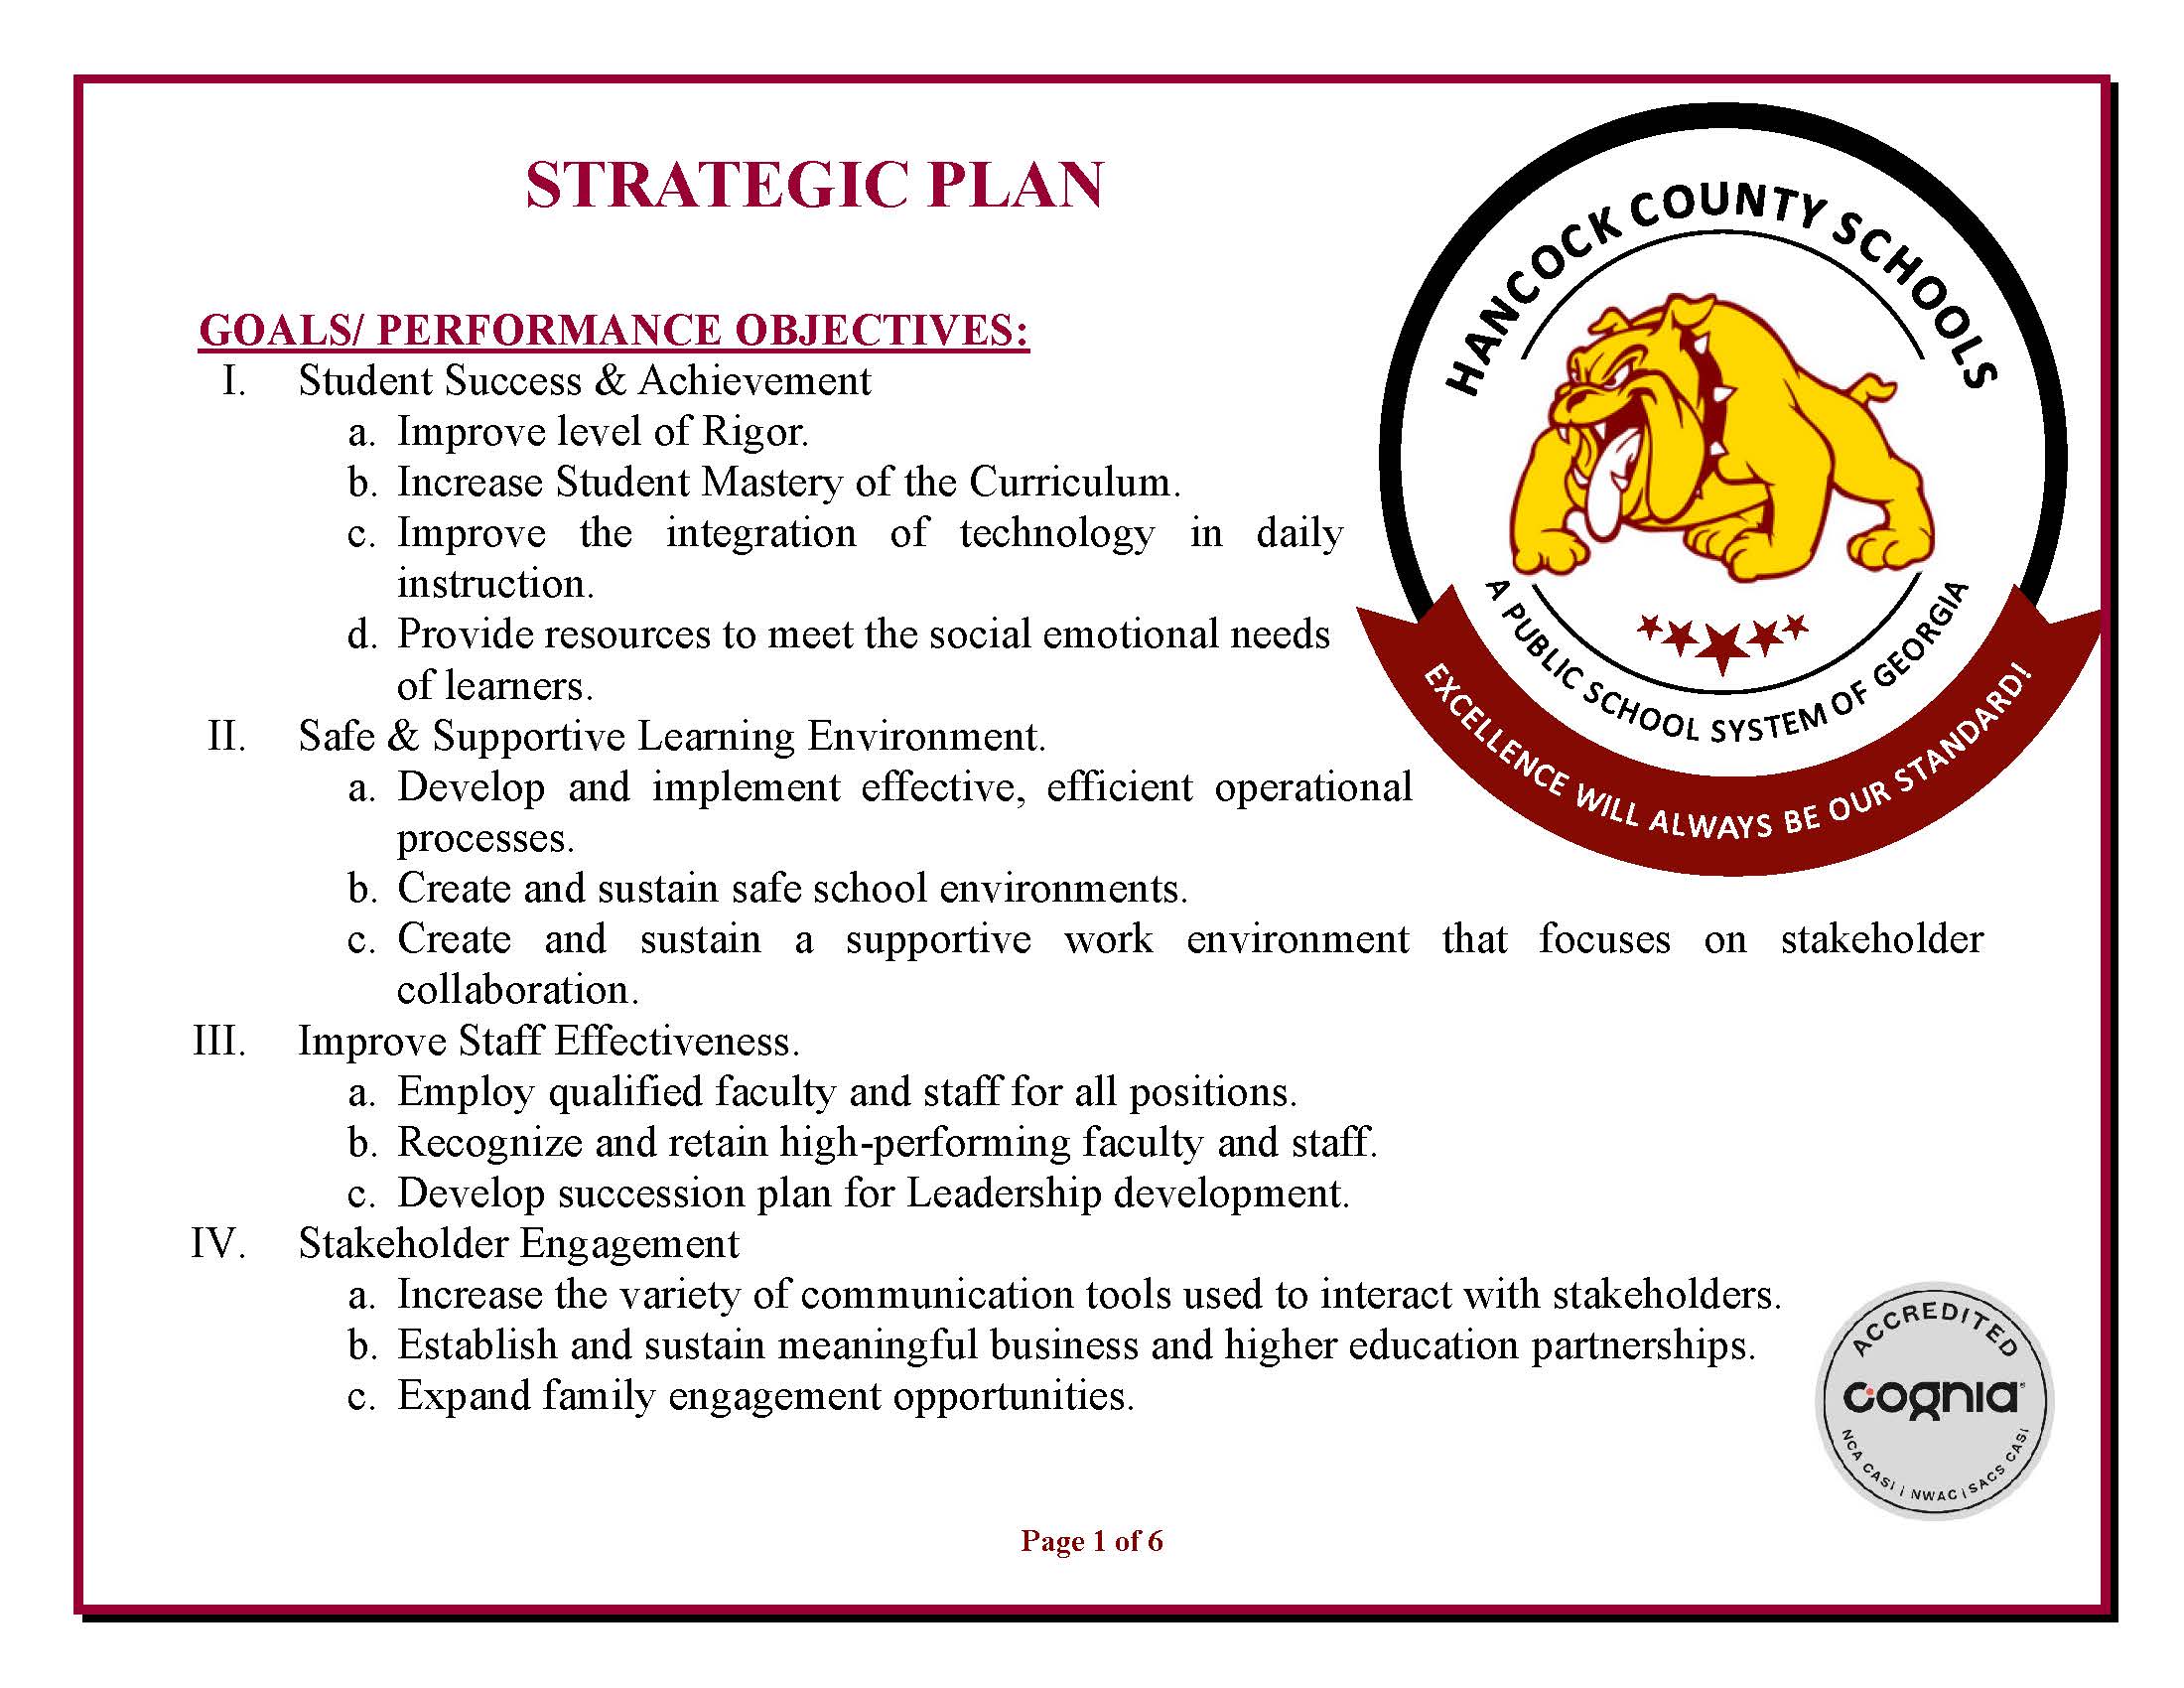 Strategic Plan Image 1